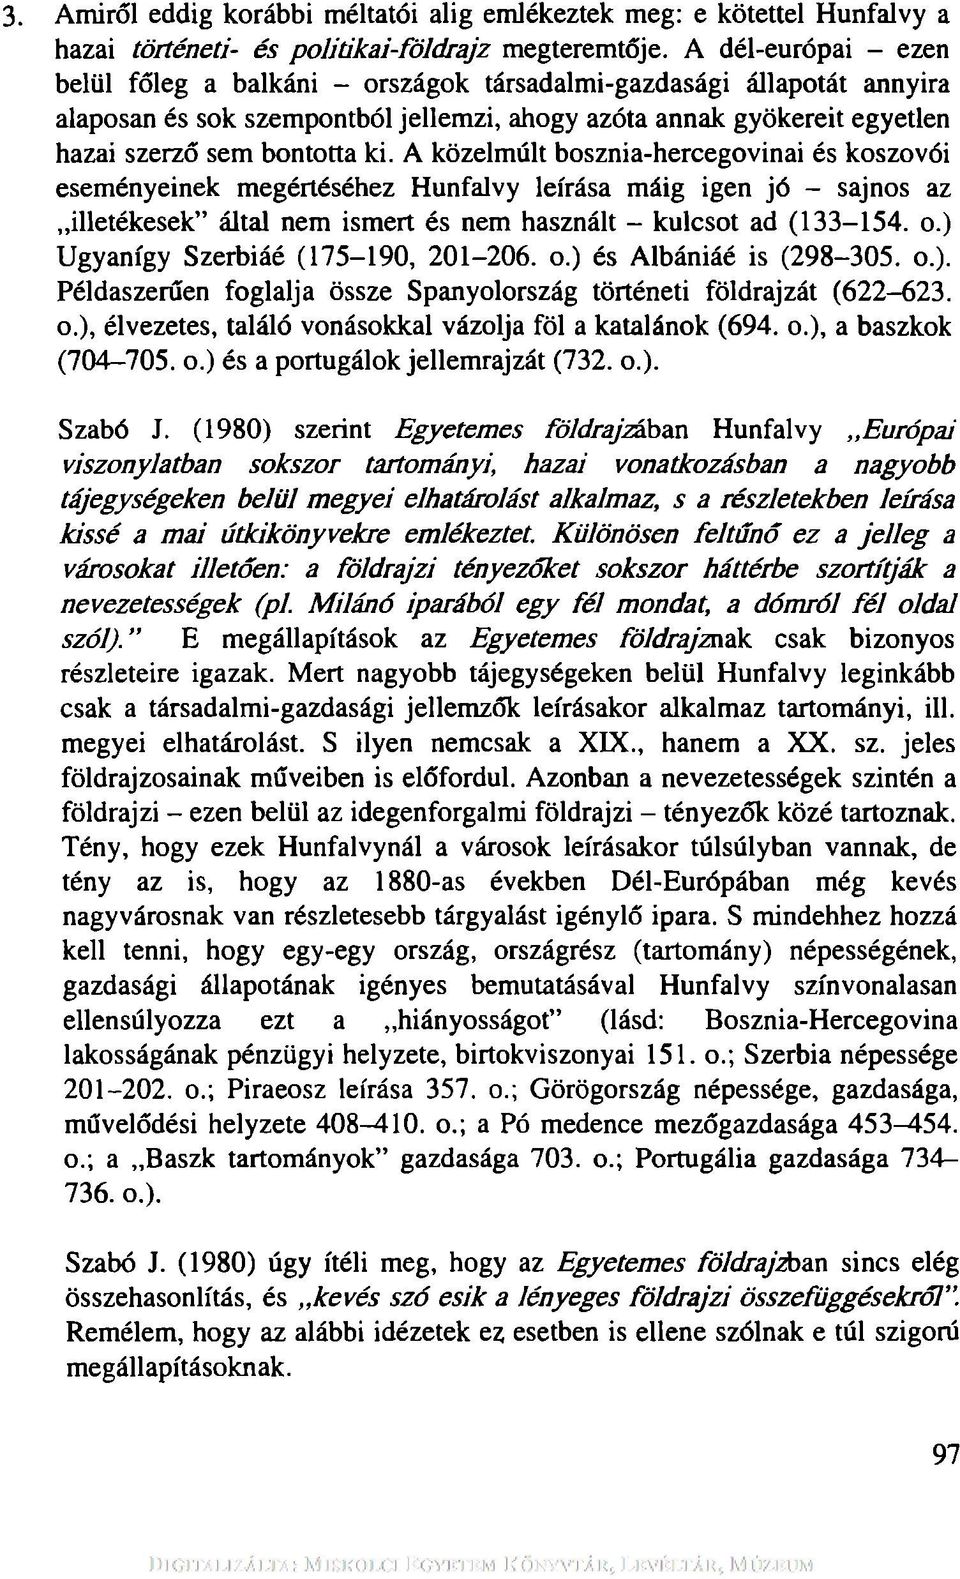 A közelmúlt bosznia-hercegovinai és koszovói eseményeinek megértéséhez Hunfalvy leírása máig igen jó - sajnos az illetékesek által nem ismert és nem használt - kulcsot ad (133-154. o.